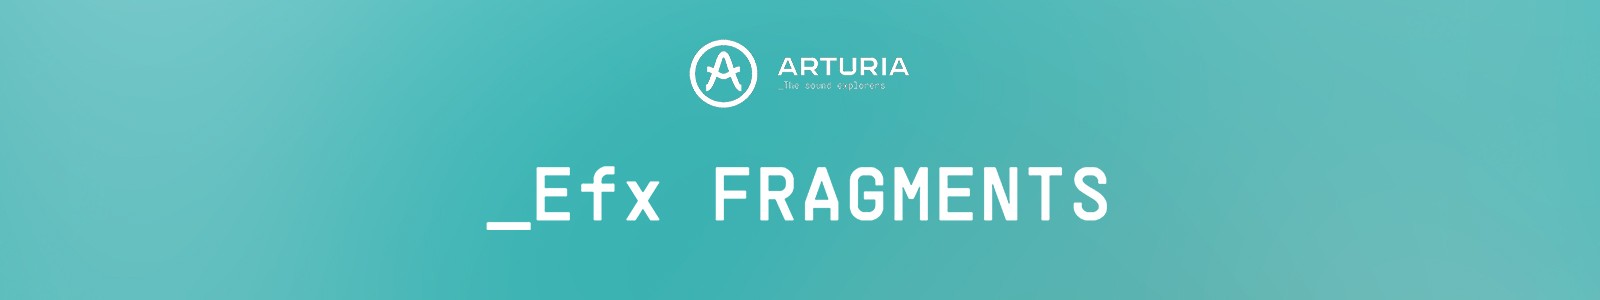 Efx Fragments by Arturia